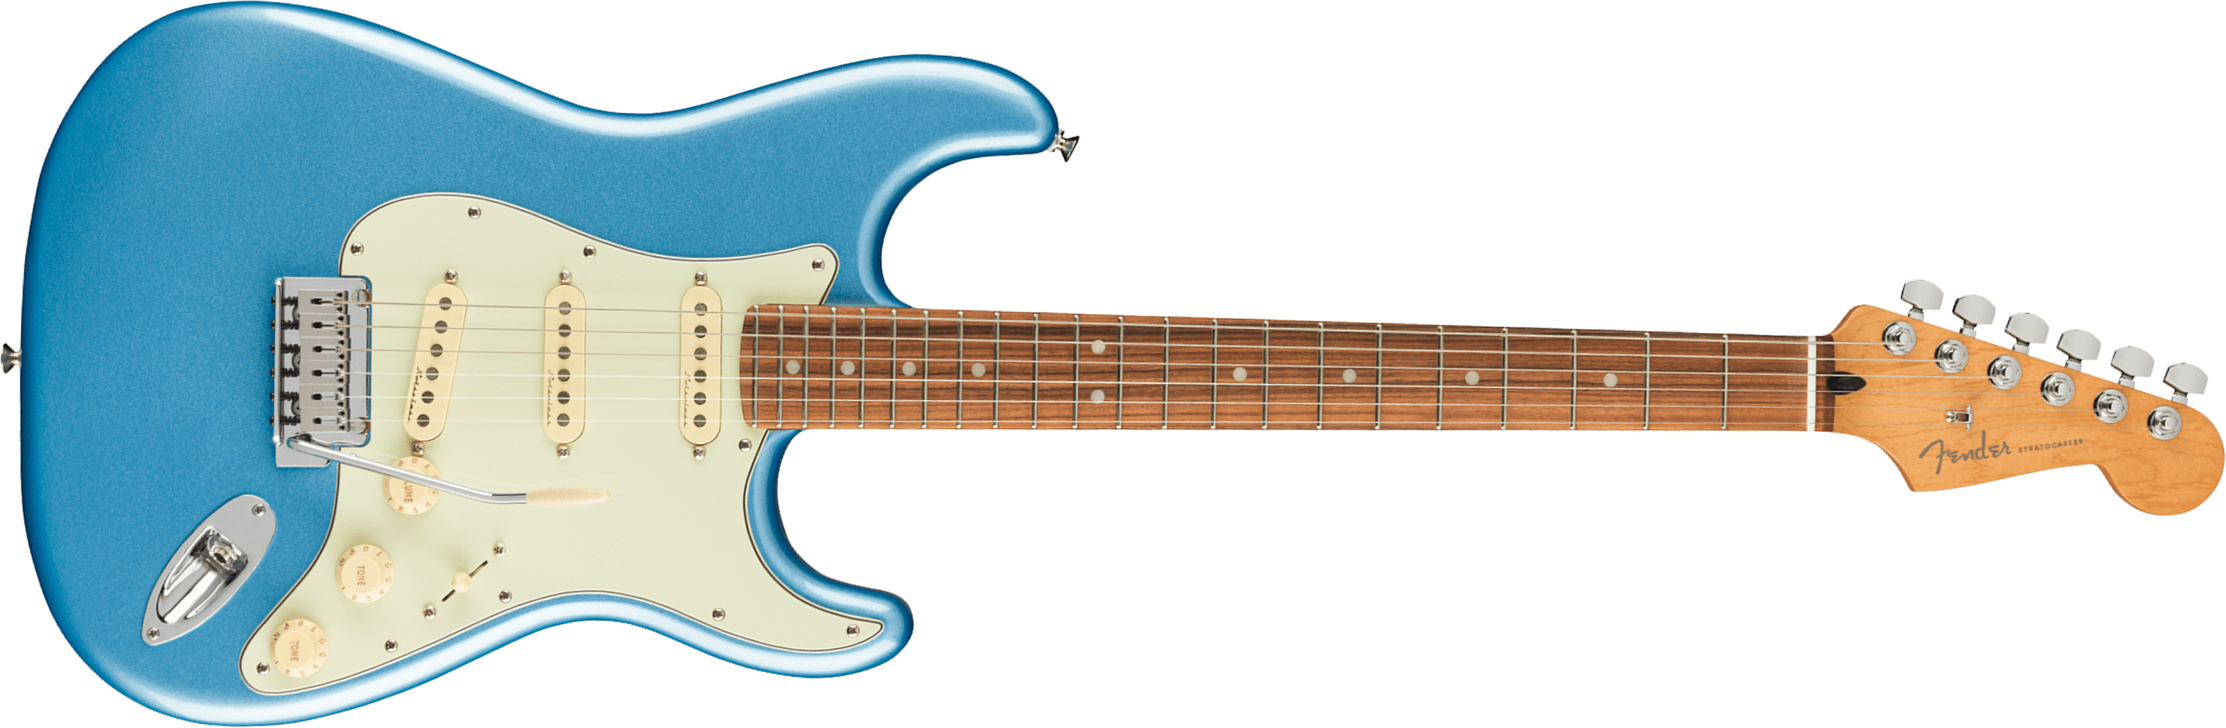 Fender Strat Player Plus Mex 3s Trem Pf - Opal Spark - Guitare Électrique Forme Str - Main picture